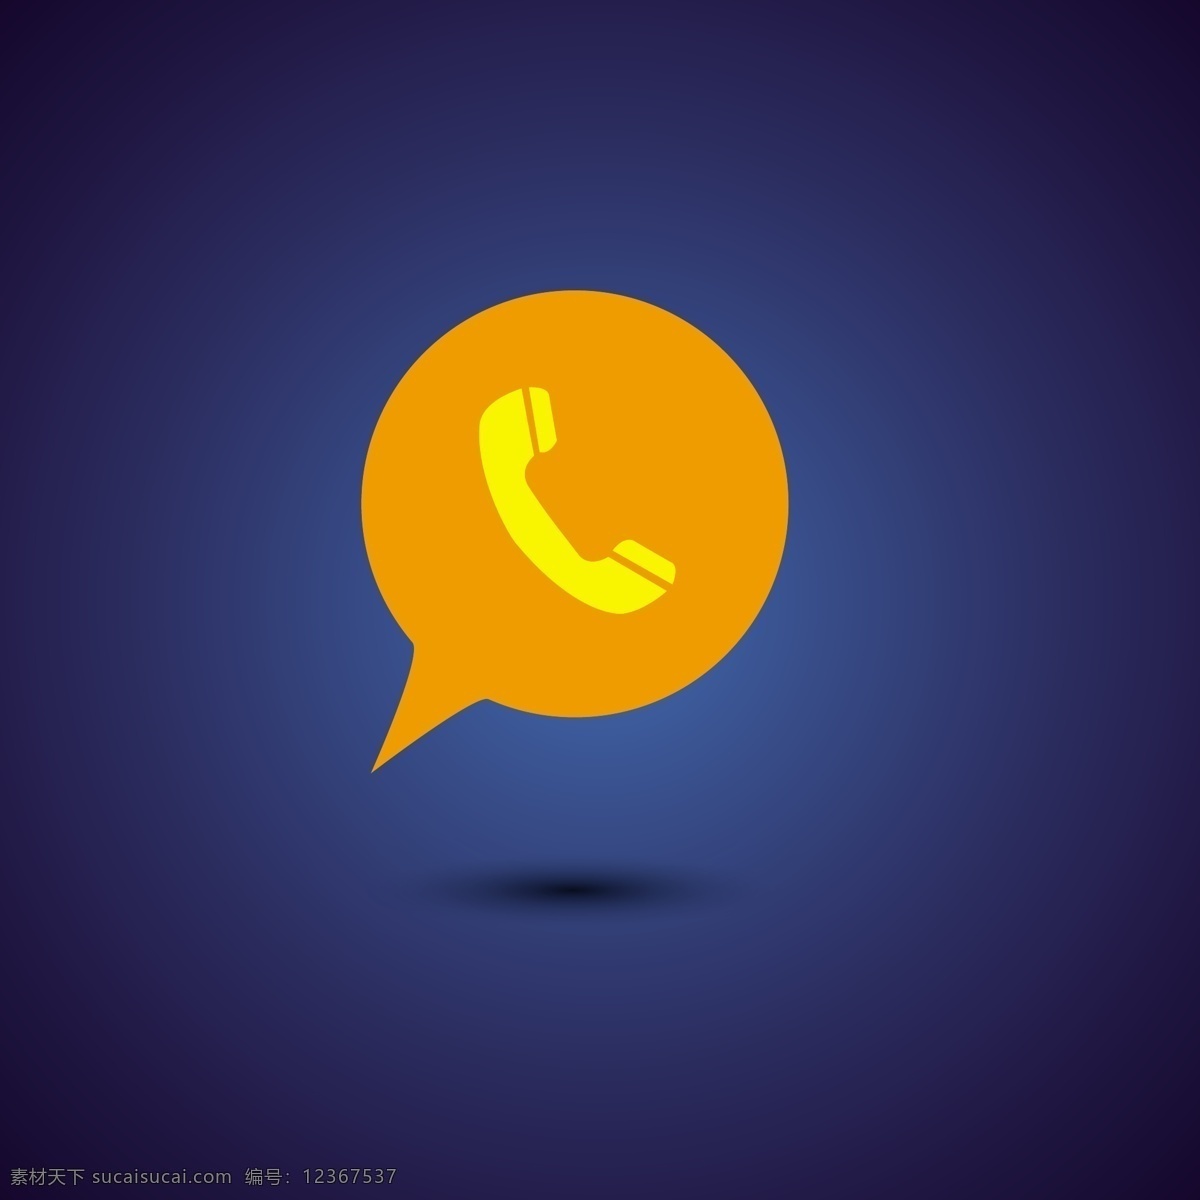 黄色 手机 图标 图示 电话 技术 语音 气球 气泡 通讯 电话图标 喇叭 语音气球 蓝色